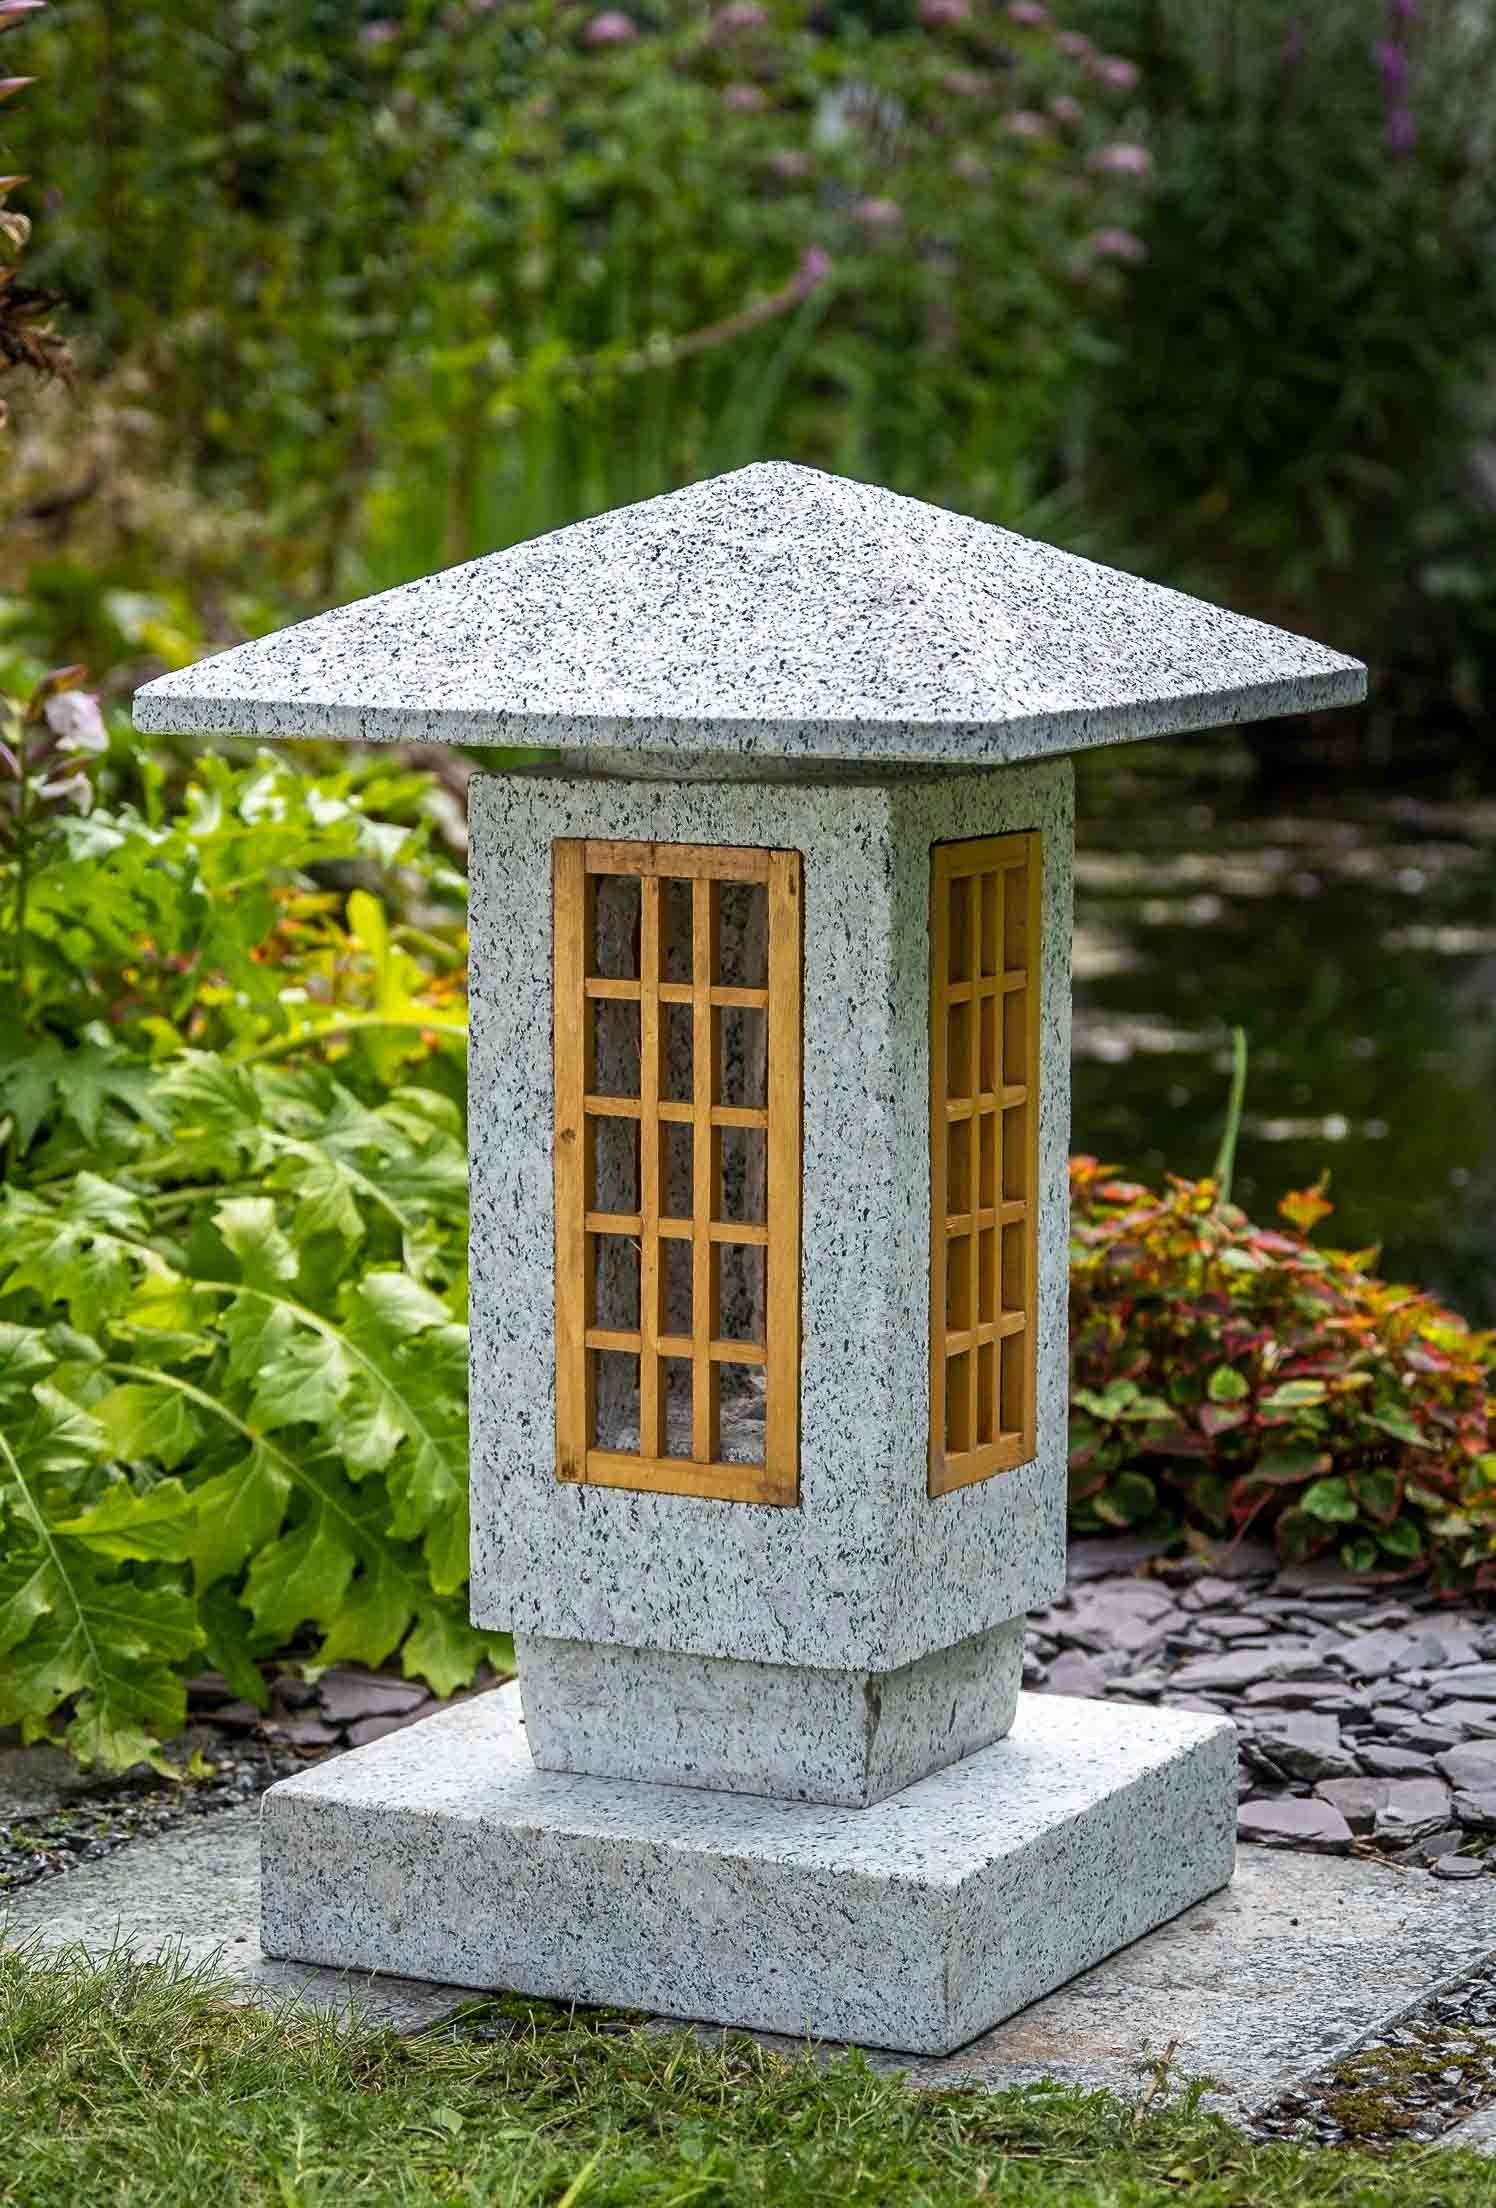 IDYL Gartenfigur Granitlaterne Sosukua mit Holzfenster, Granitstein – ein Naturprodukt sehr robust – witterungsbeständig gegen Frost, Regen und UV-Strahlung.